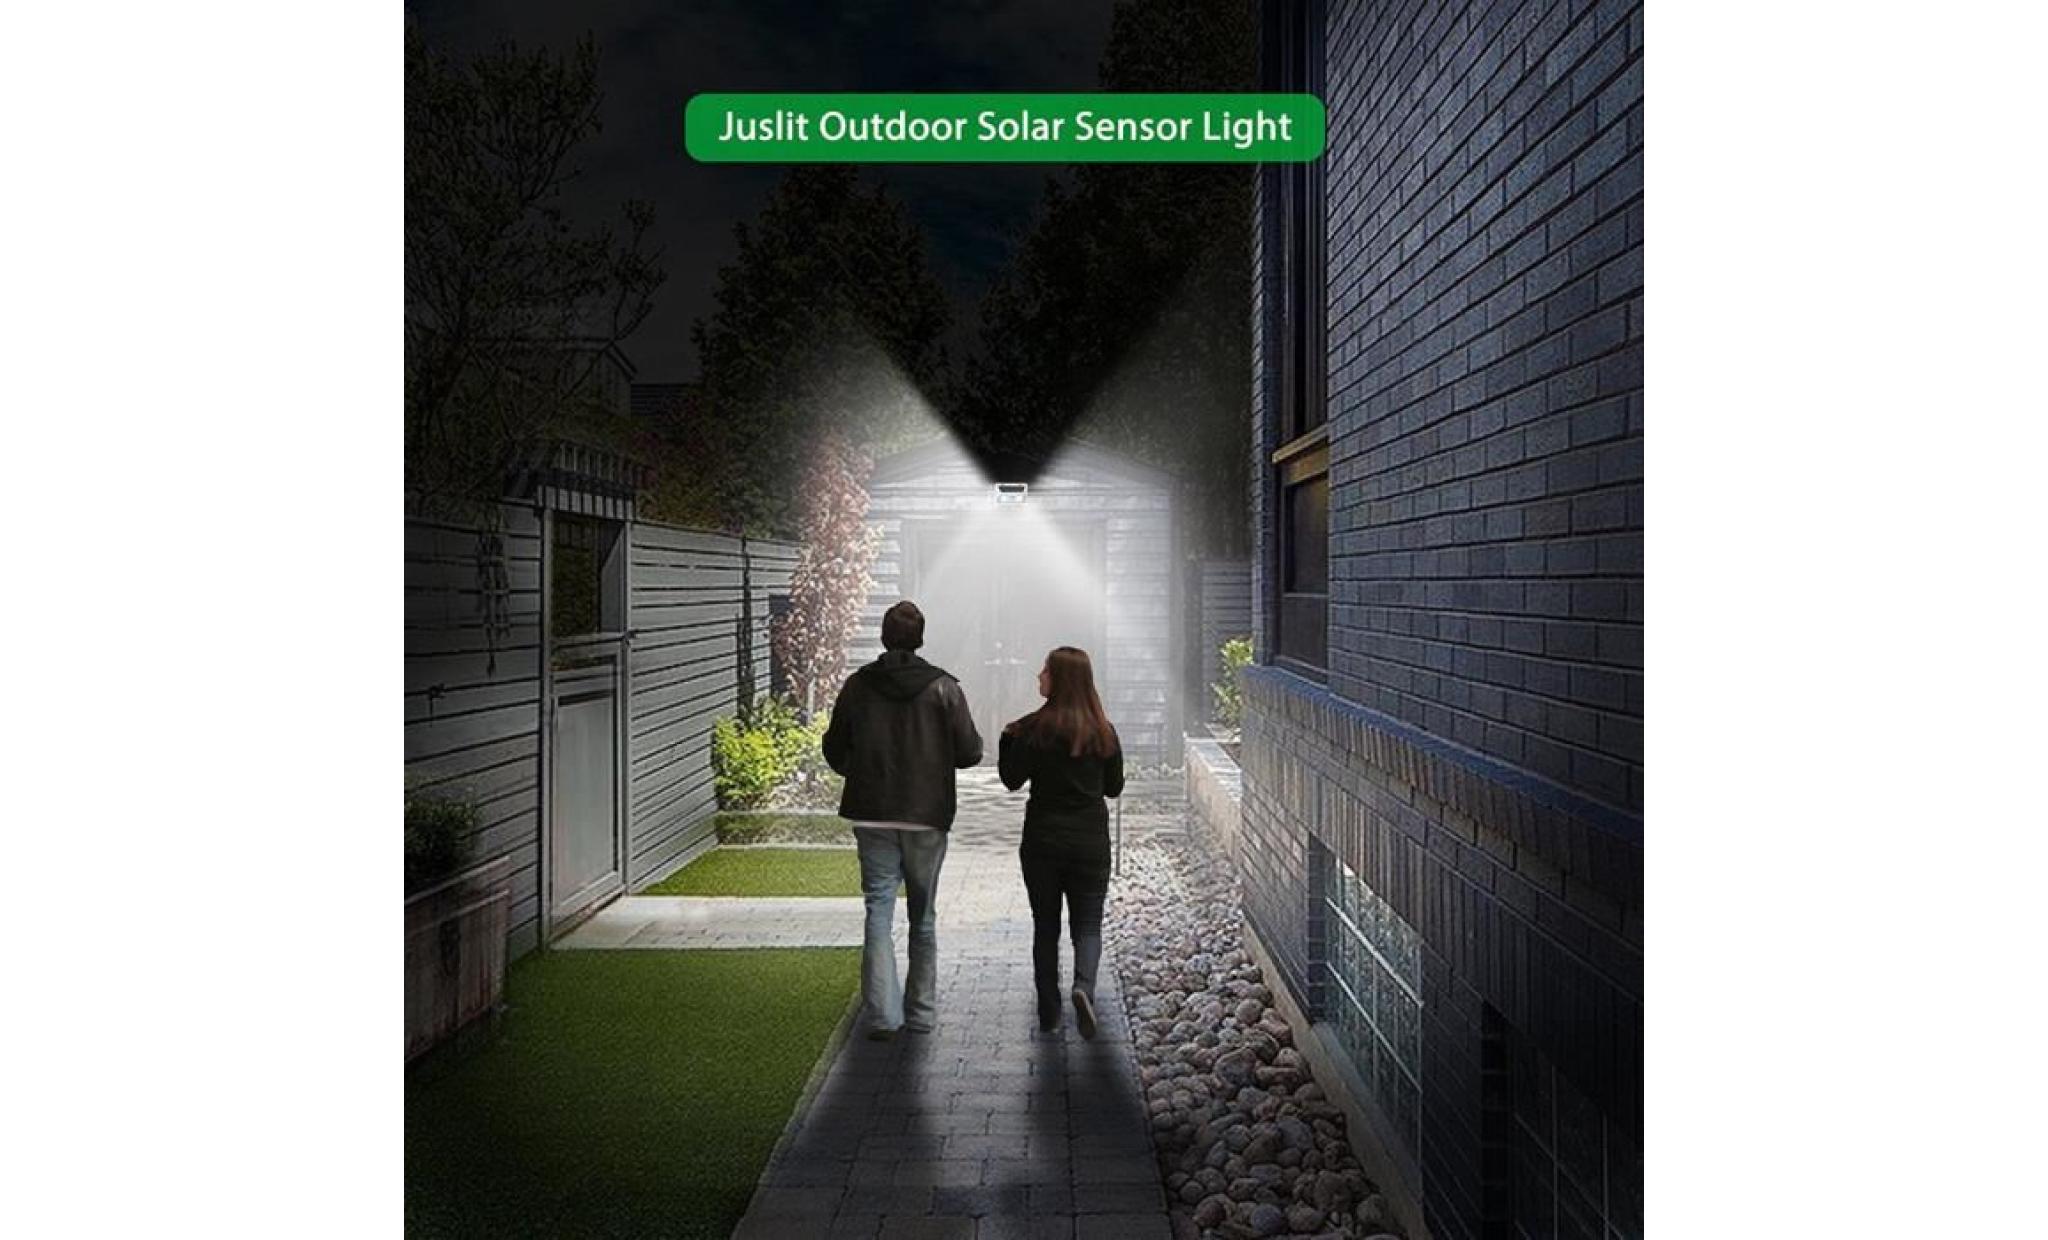 borne solaire 95 smd cob lumière solaire pir motion sensor lampe de jardin de rue extérieure #la 342 pas cher